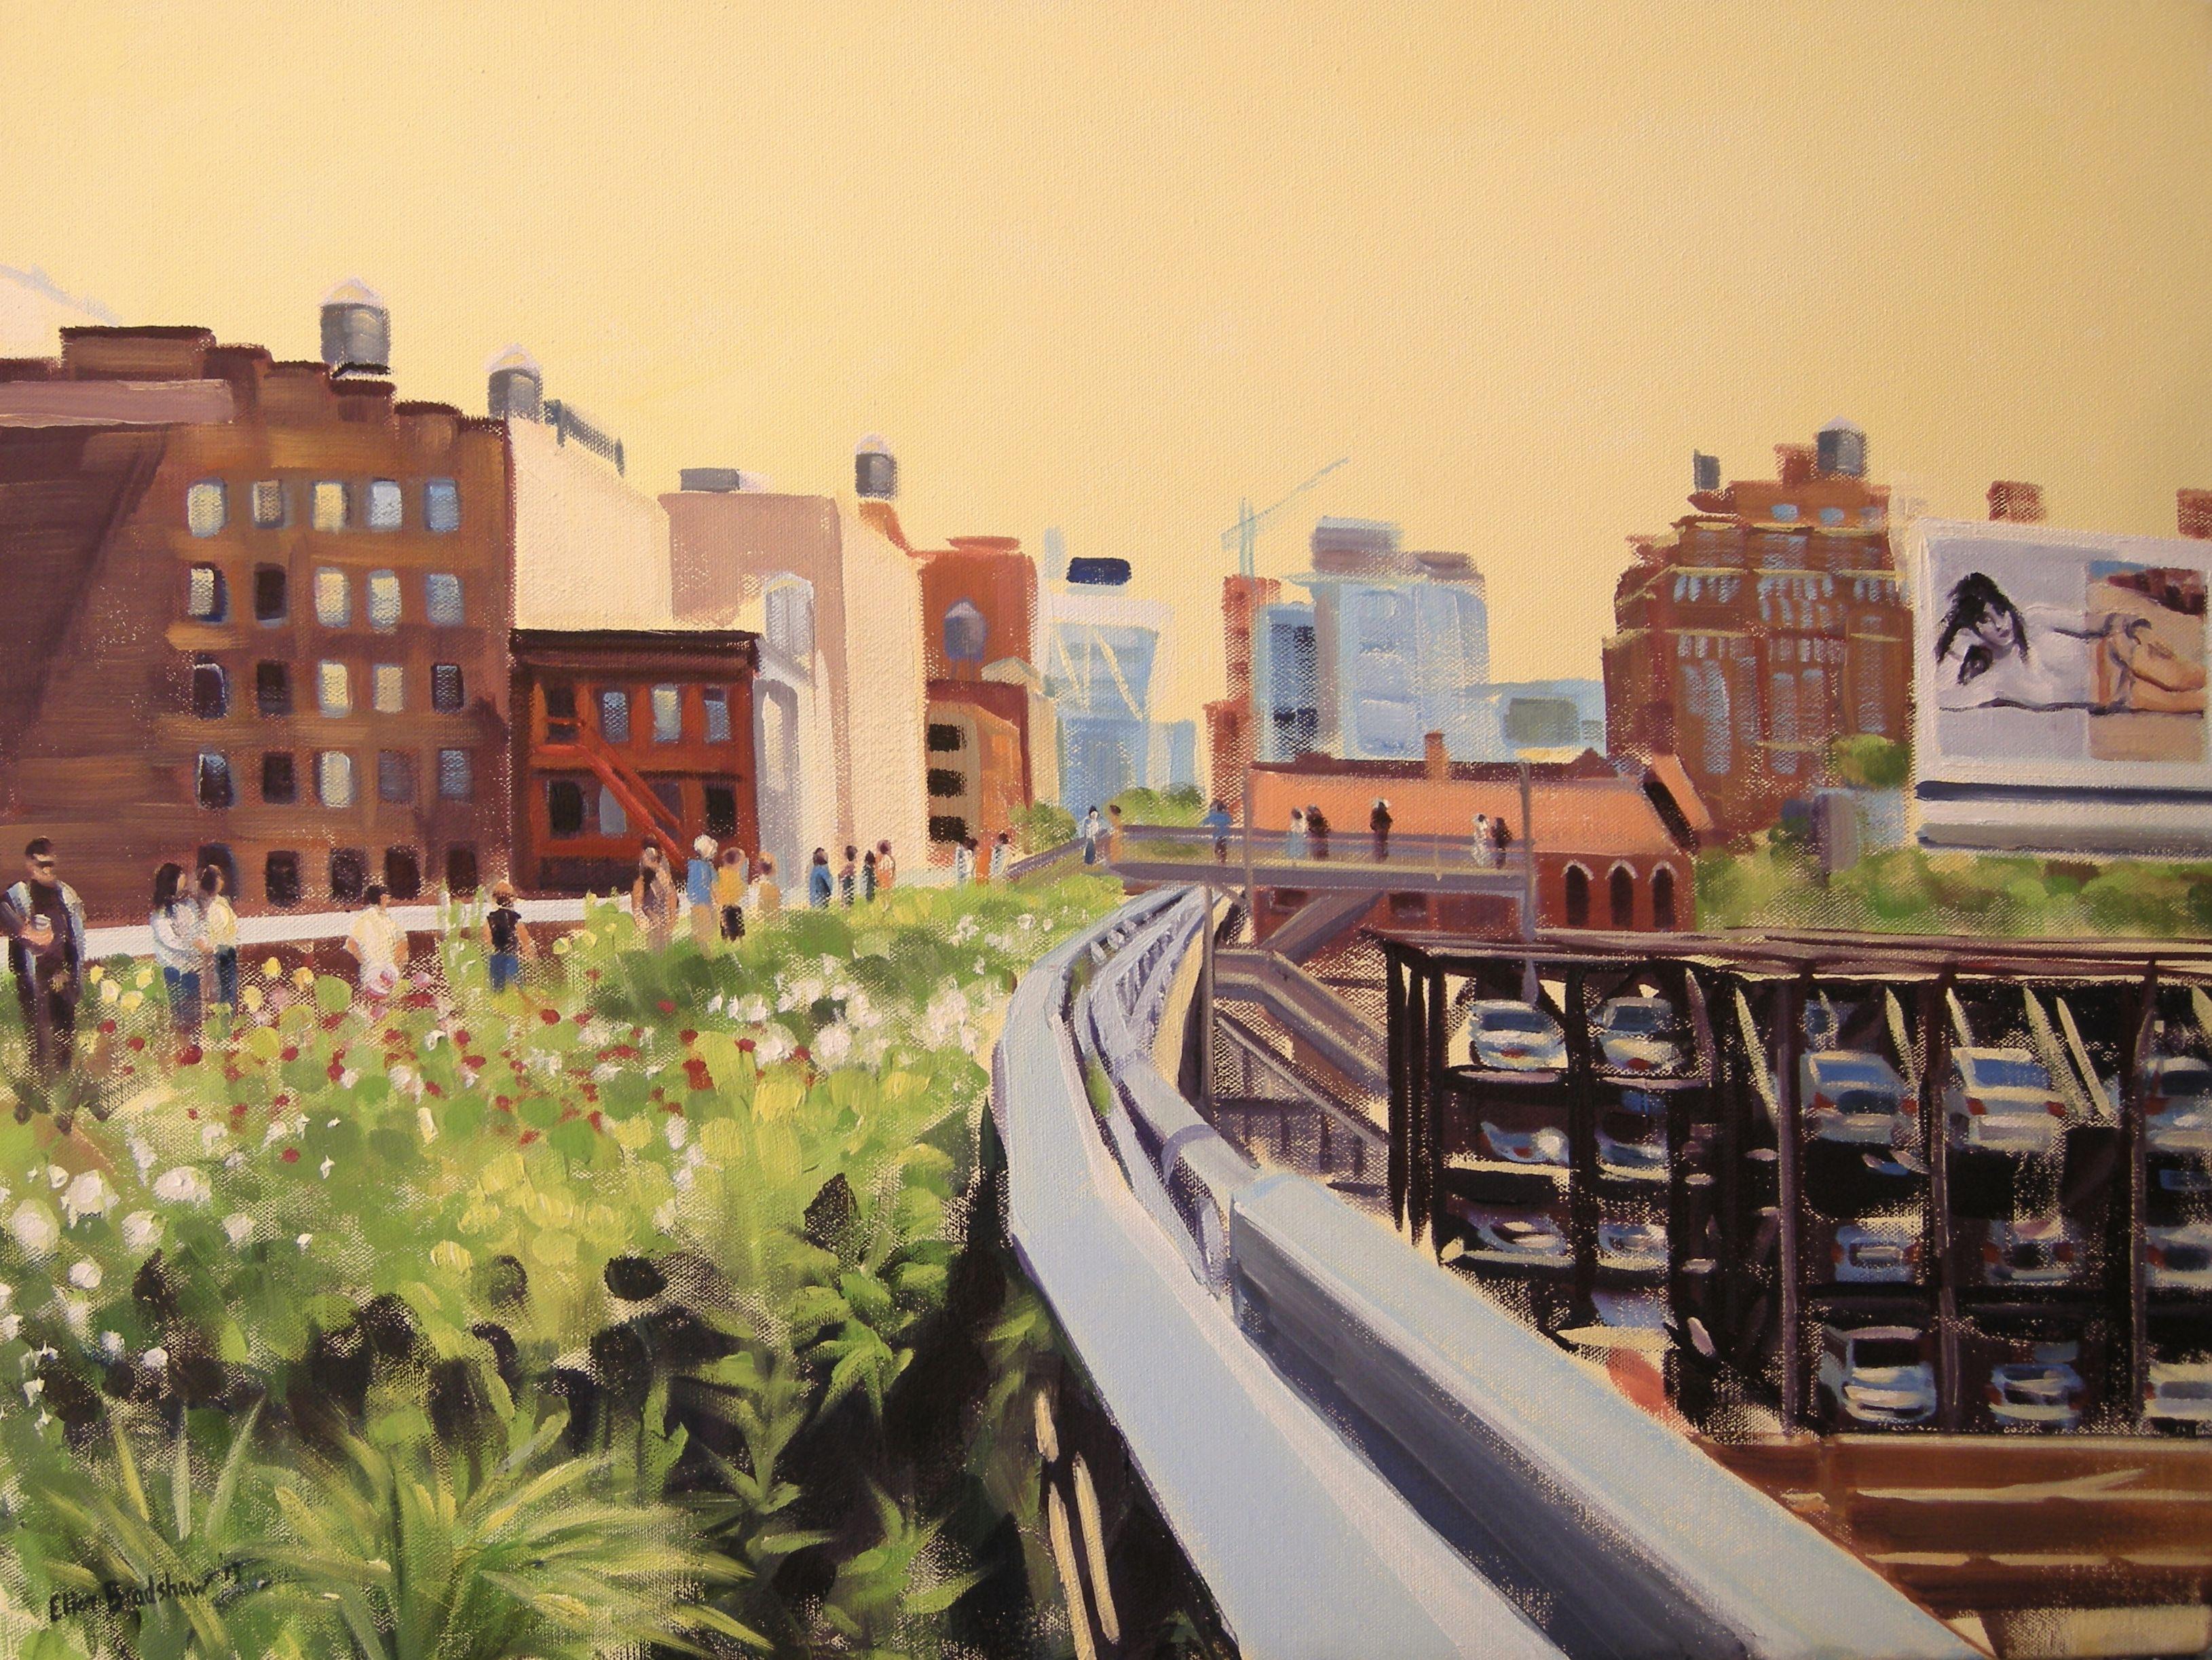 Abstract Painting Ellen Bradshaw - Walking the High Line en juin, peinture, huile sur toile